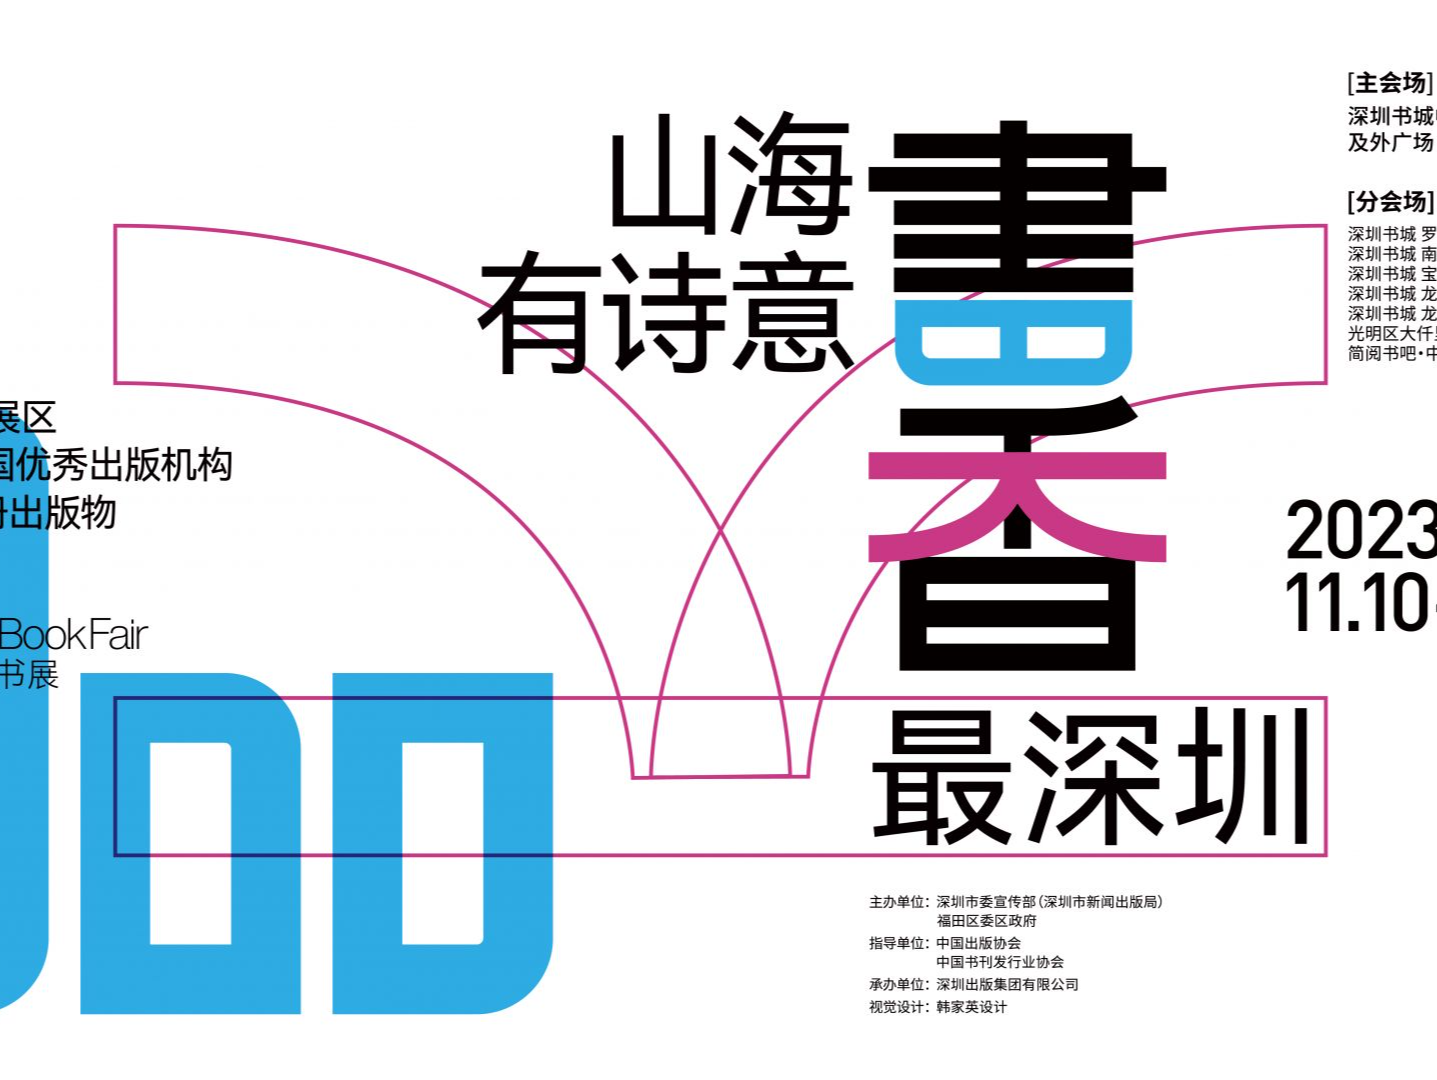 第五届深圳书展将于11月10日开幕